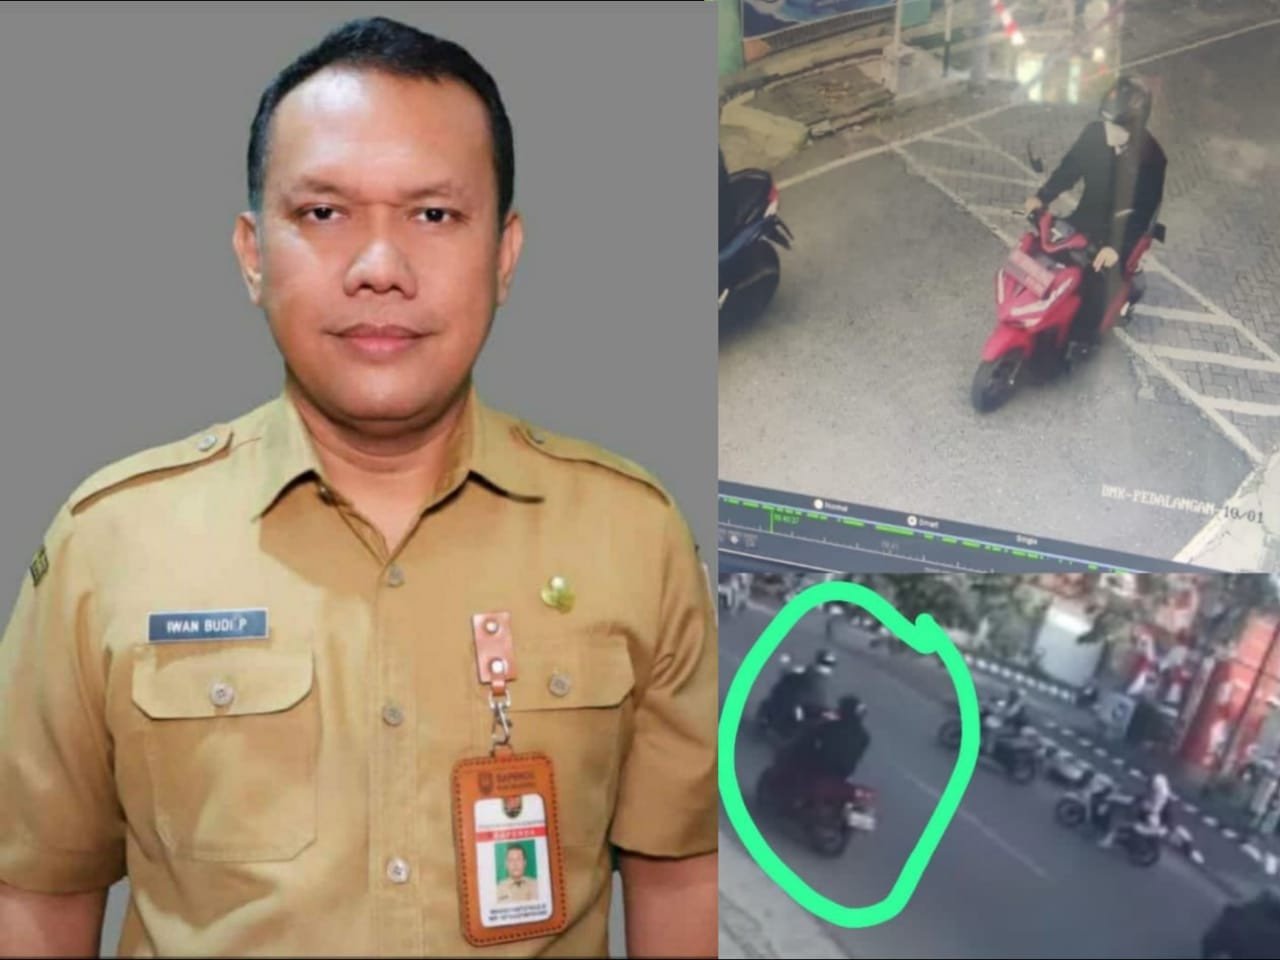 Pegawai Badan Pendapatan Daerah (Bapenda) Kota Semarang bernama Paulus Iwan Boedi Prasetjo (51) dikabarkan hilang secara misterius.